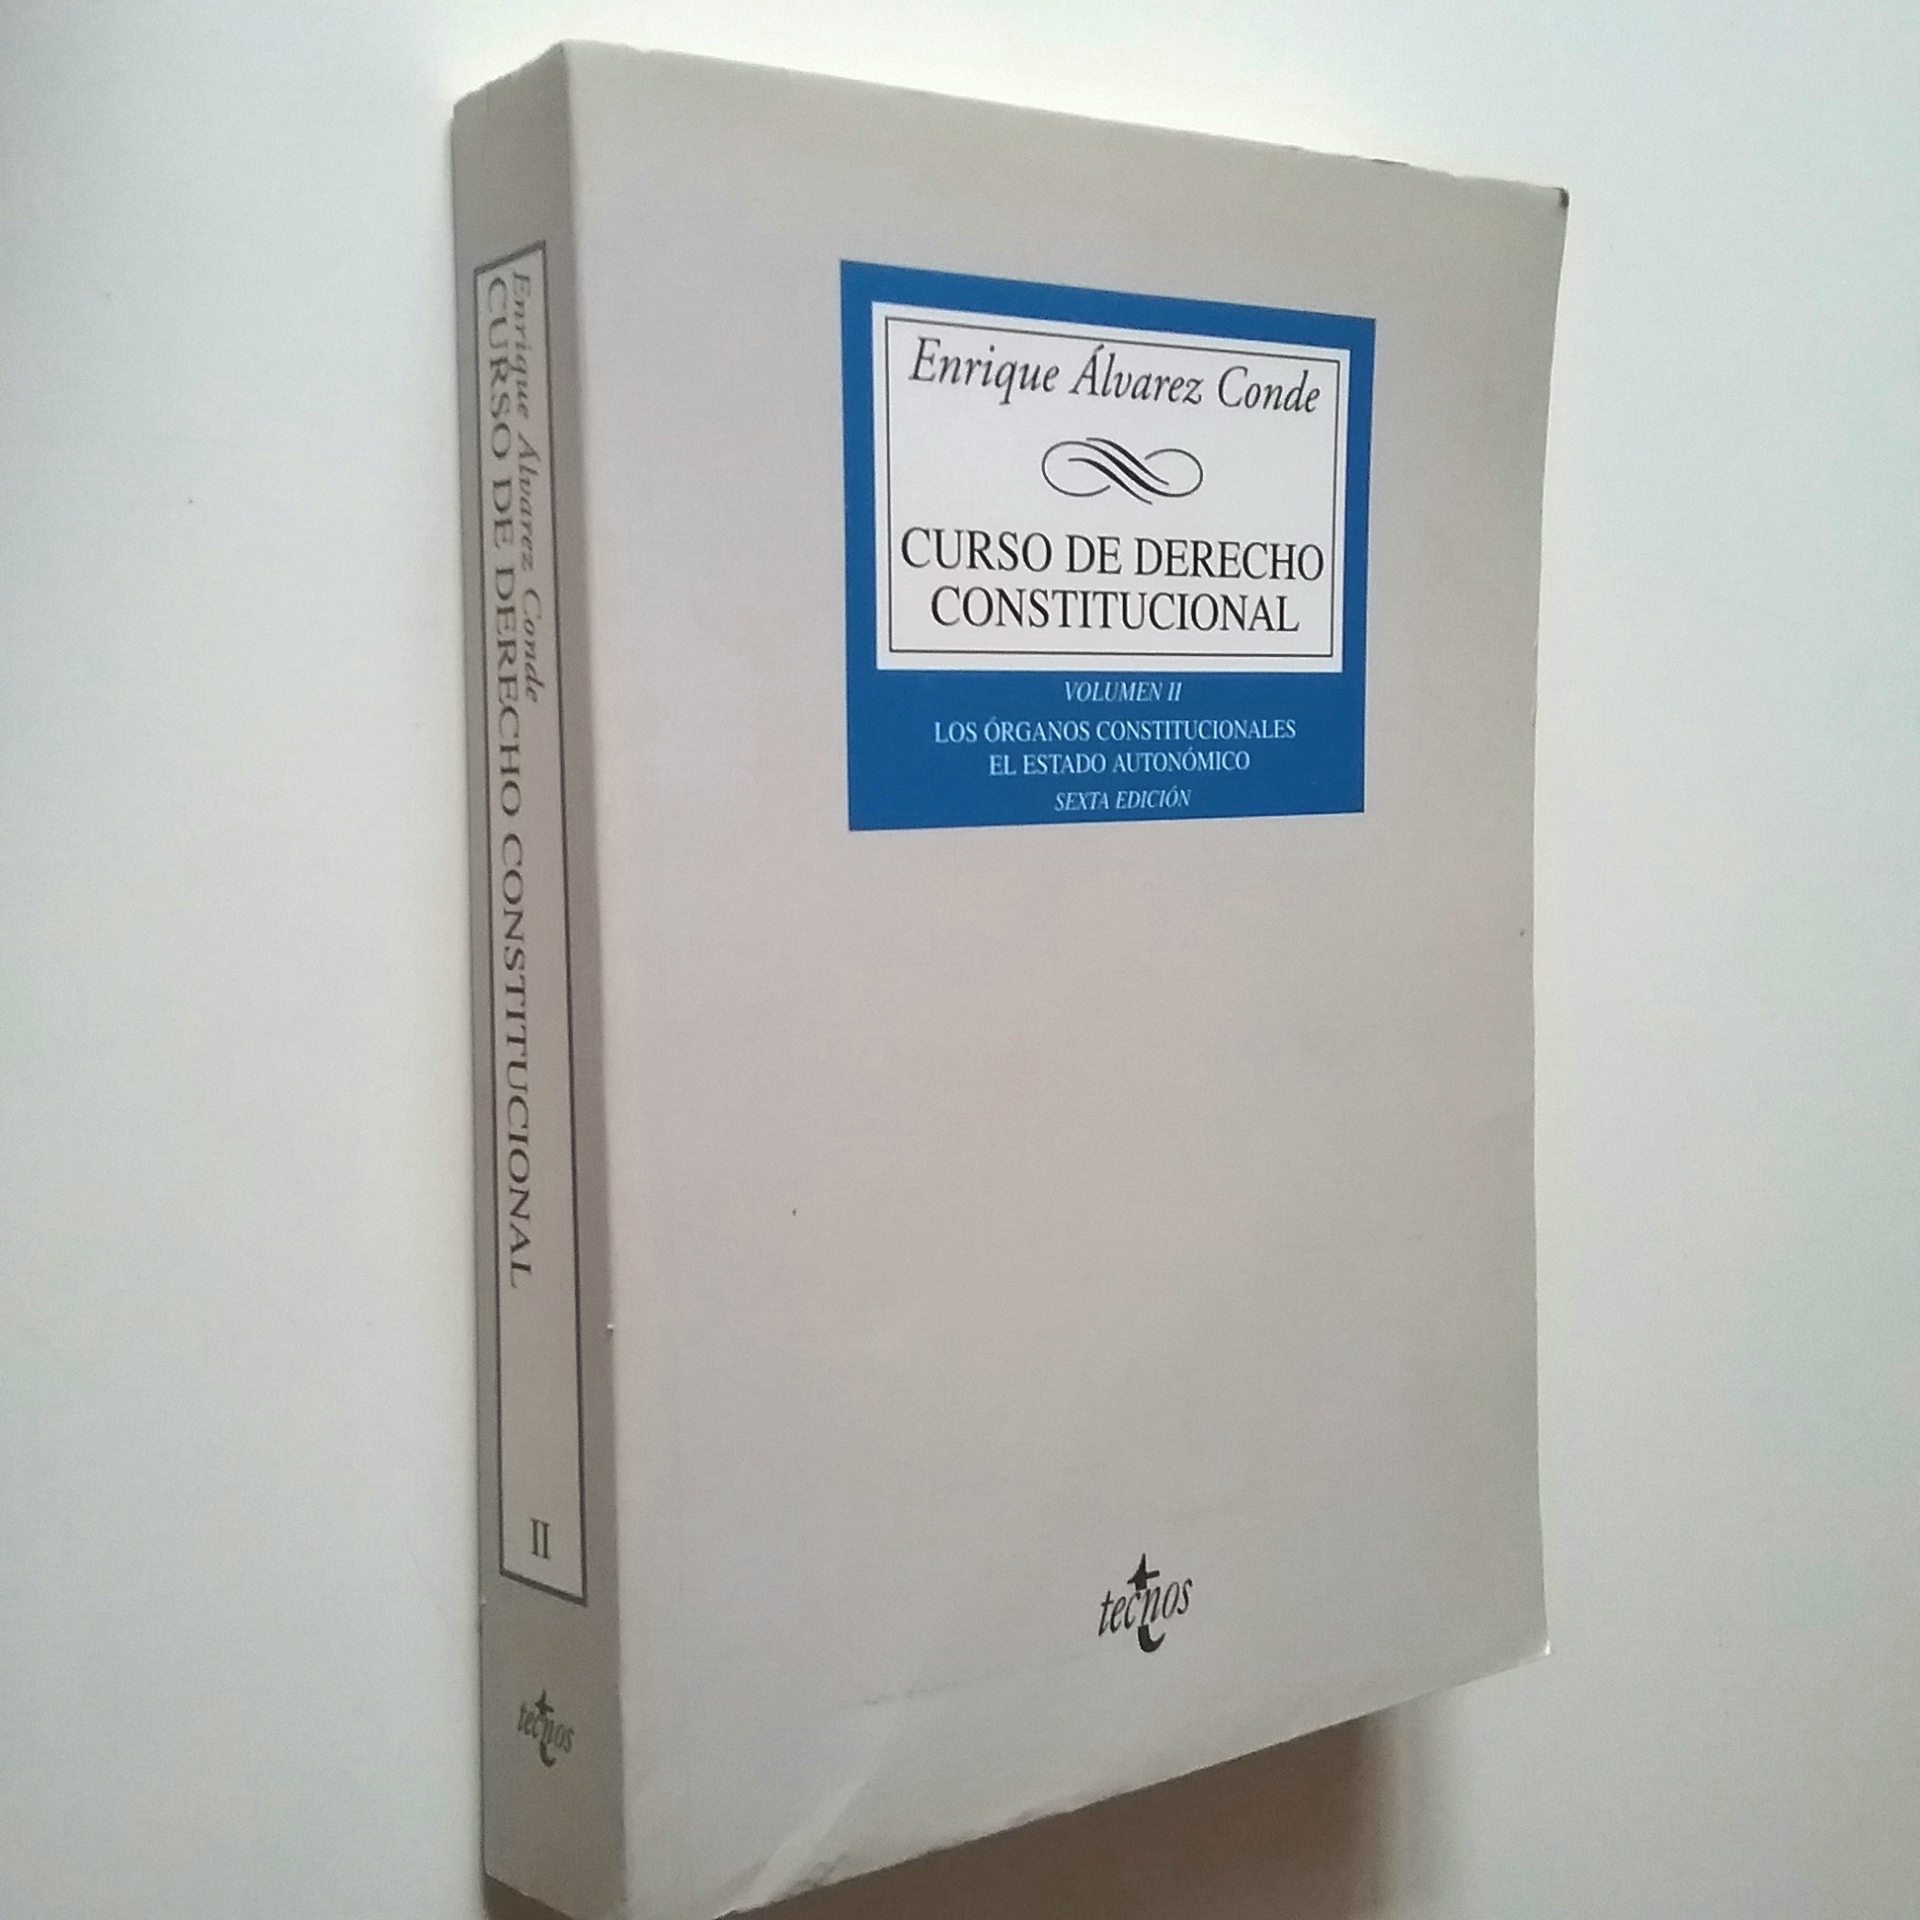 Curso de Derecho Constitucional. Volumen II. Los órganos constitucionales. El Estado Autonómico - Enrique Álvarez Conde